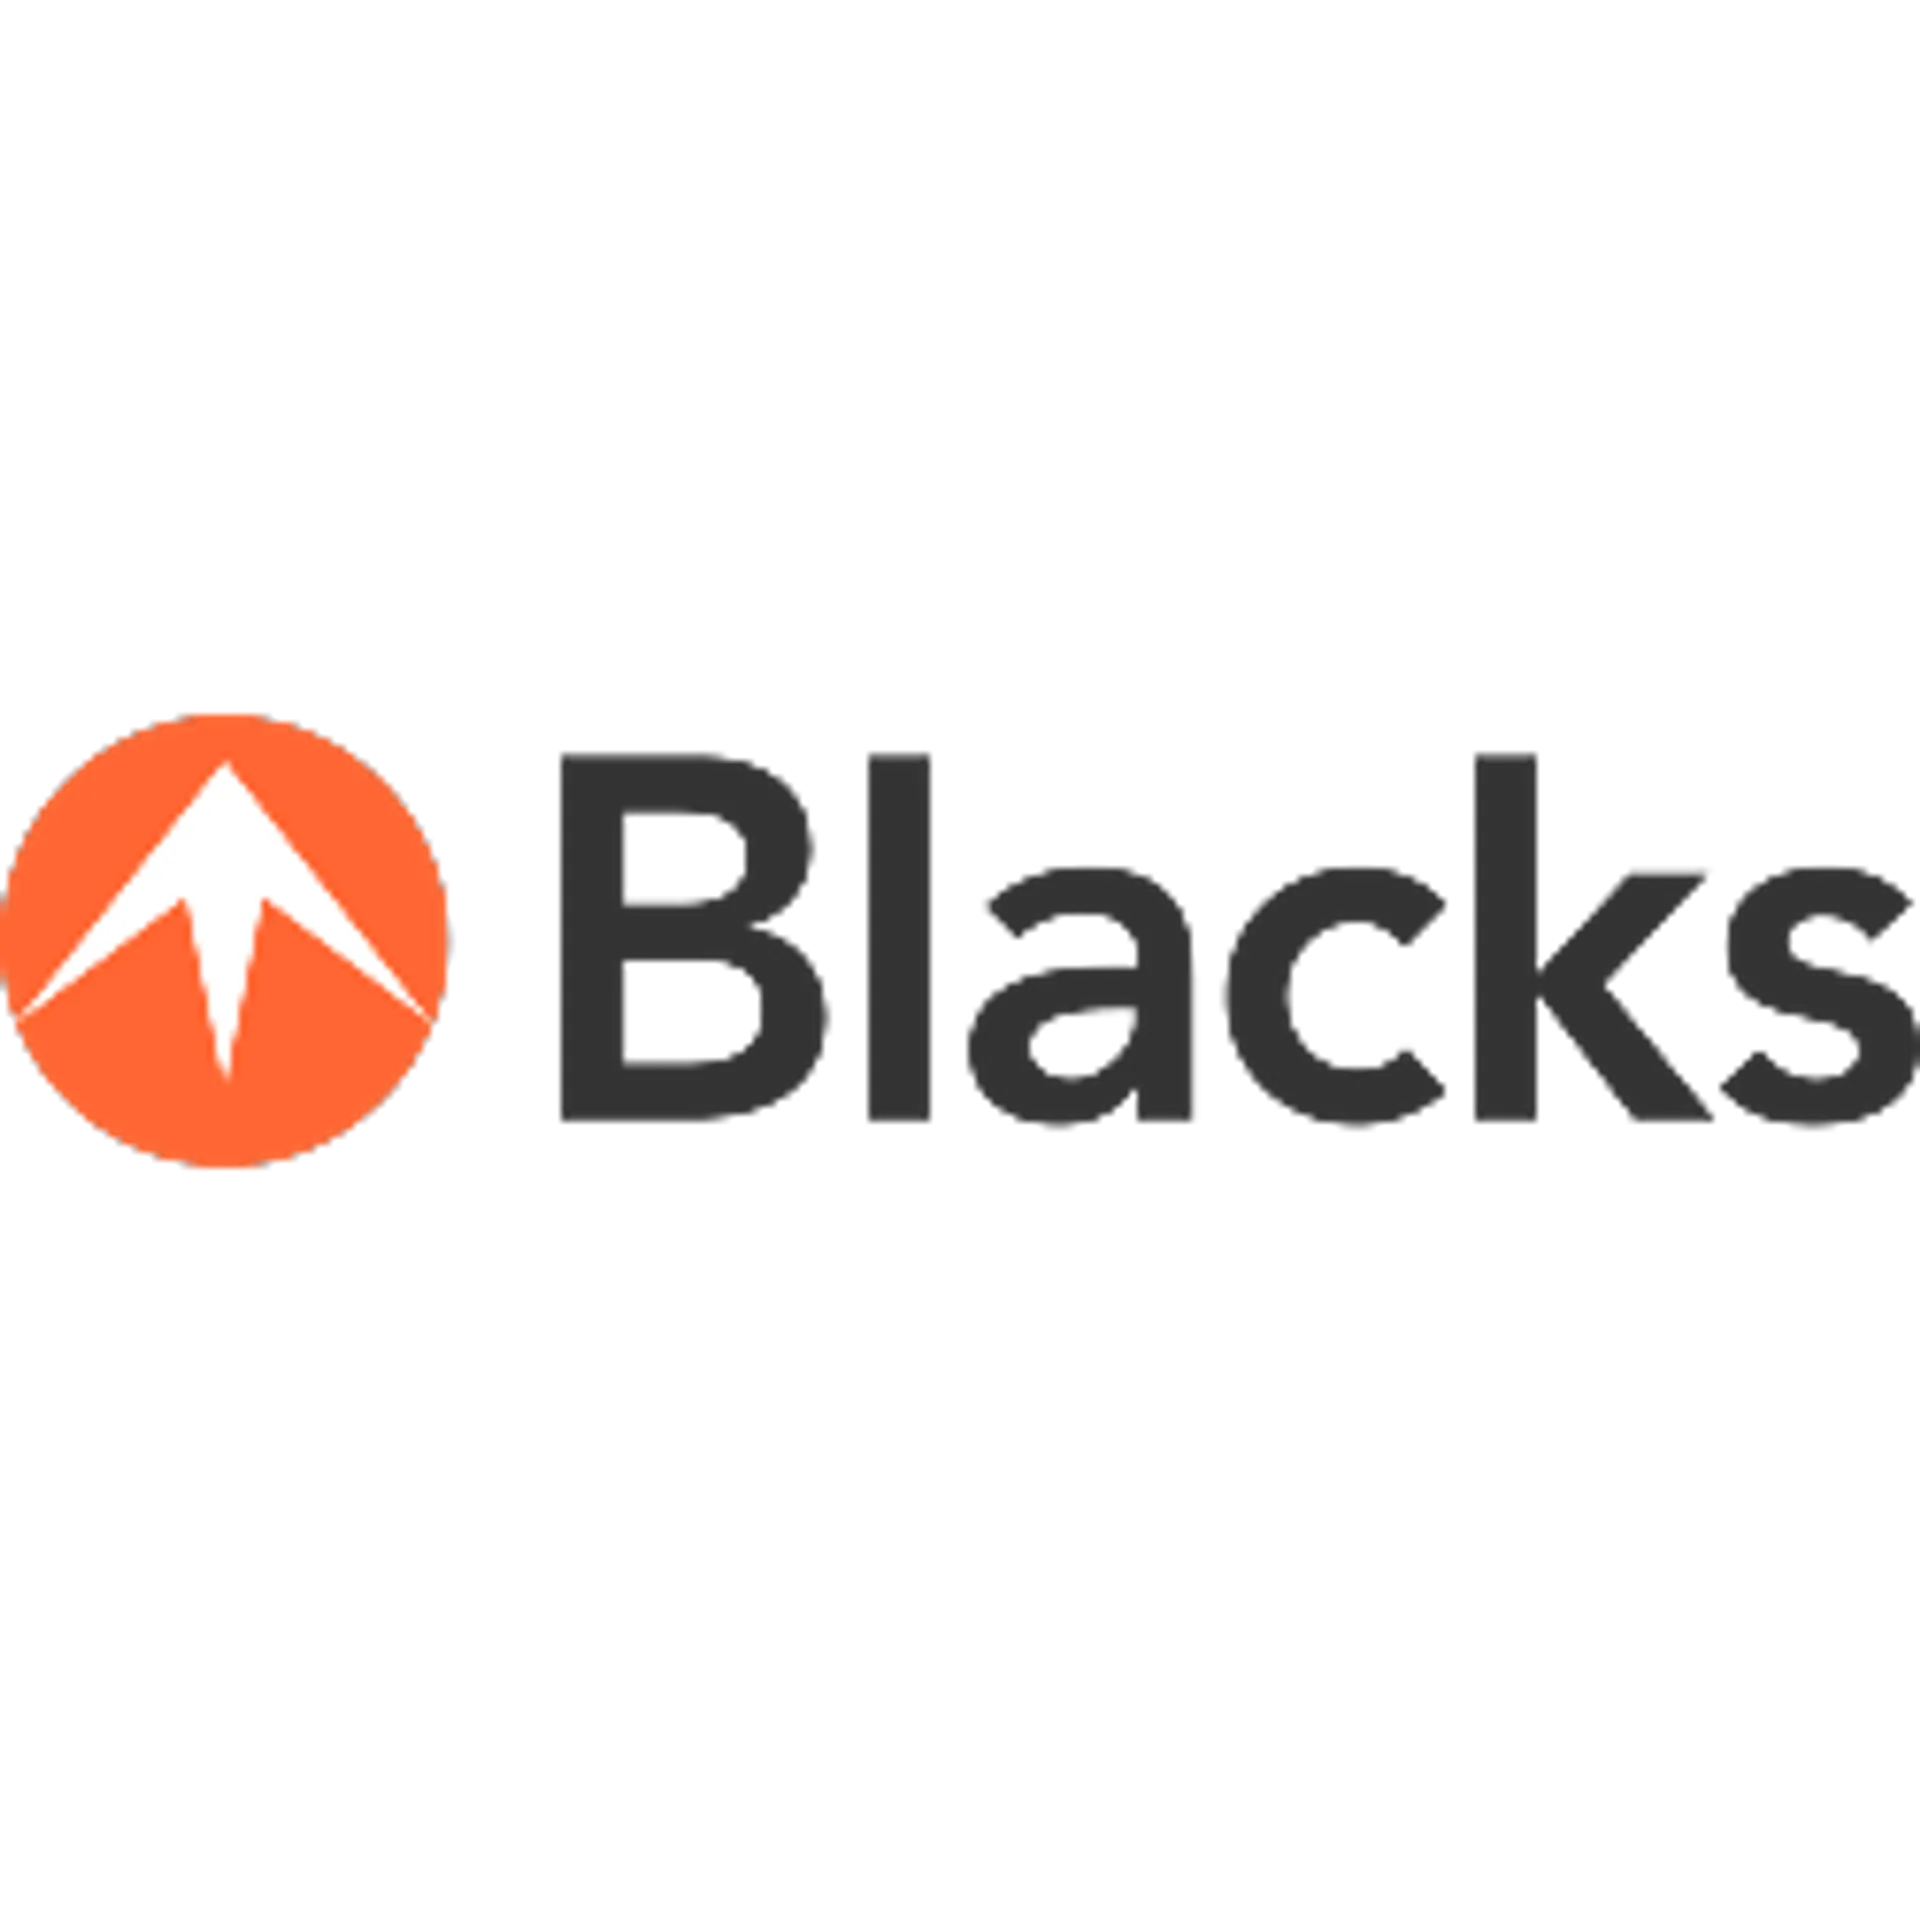 BLACKS logo